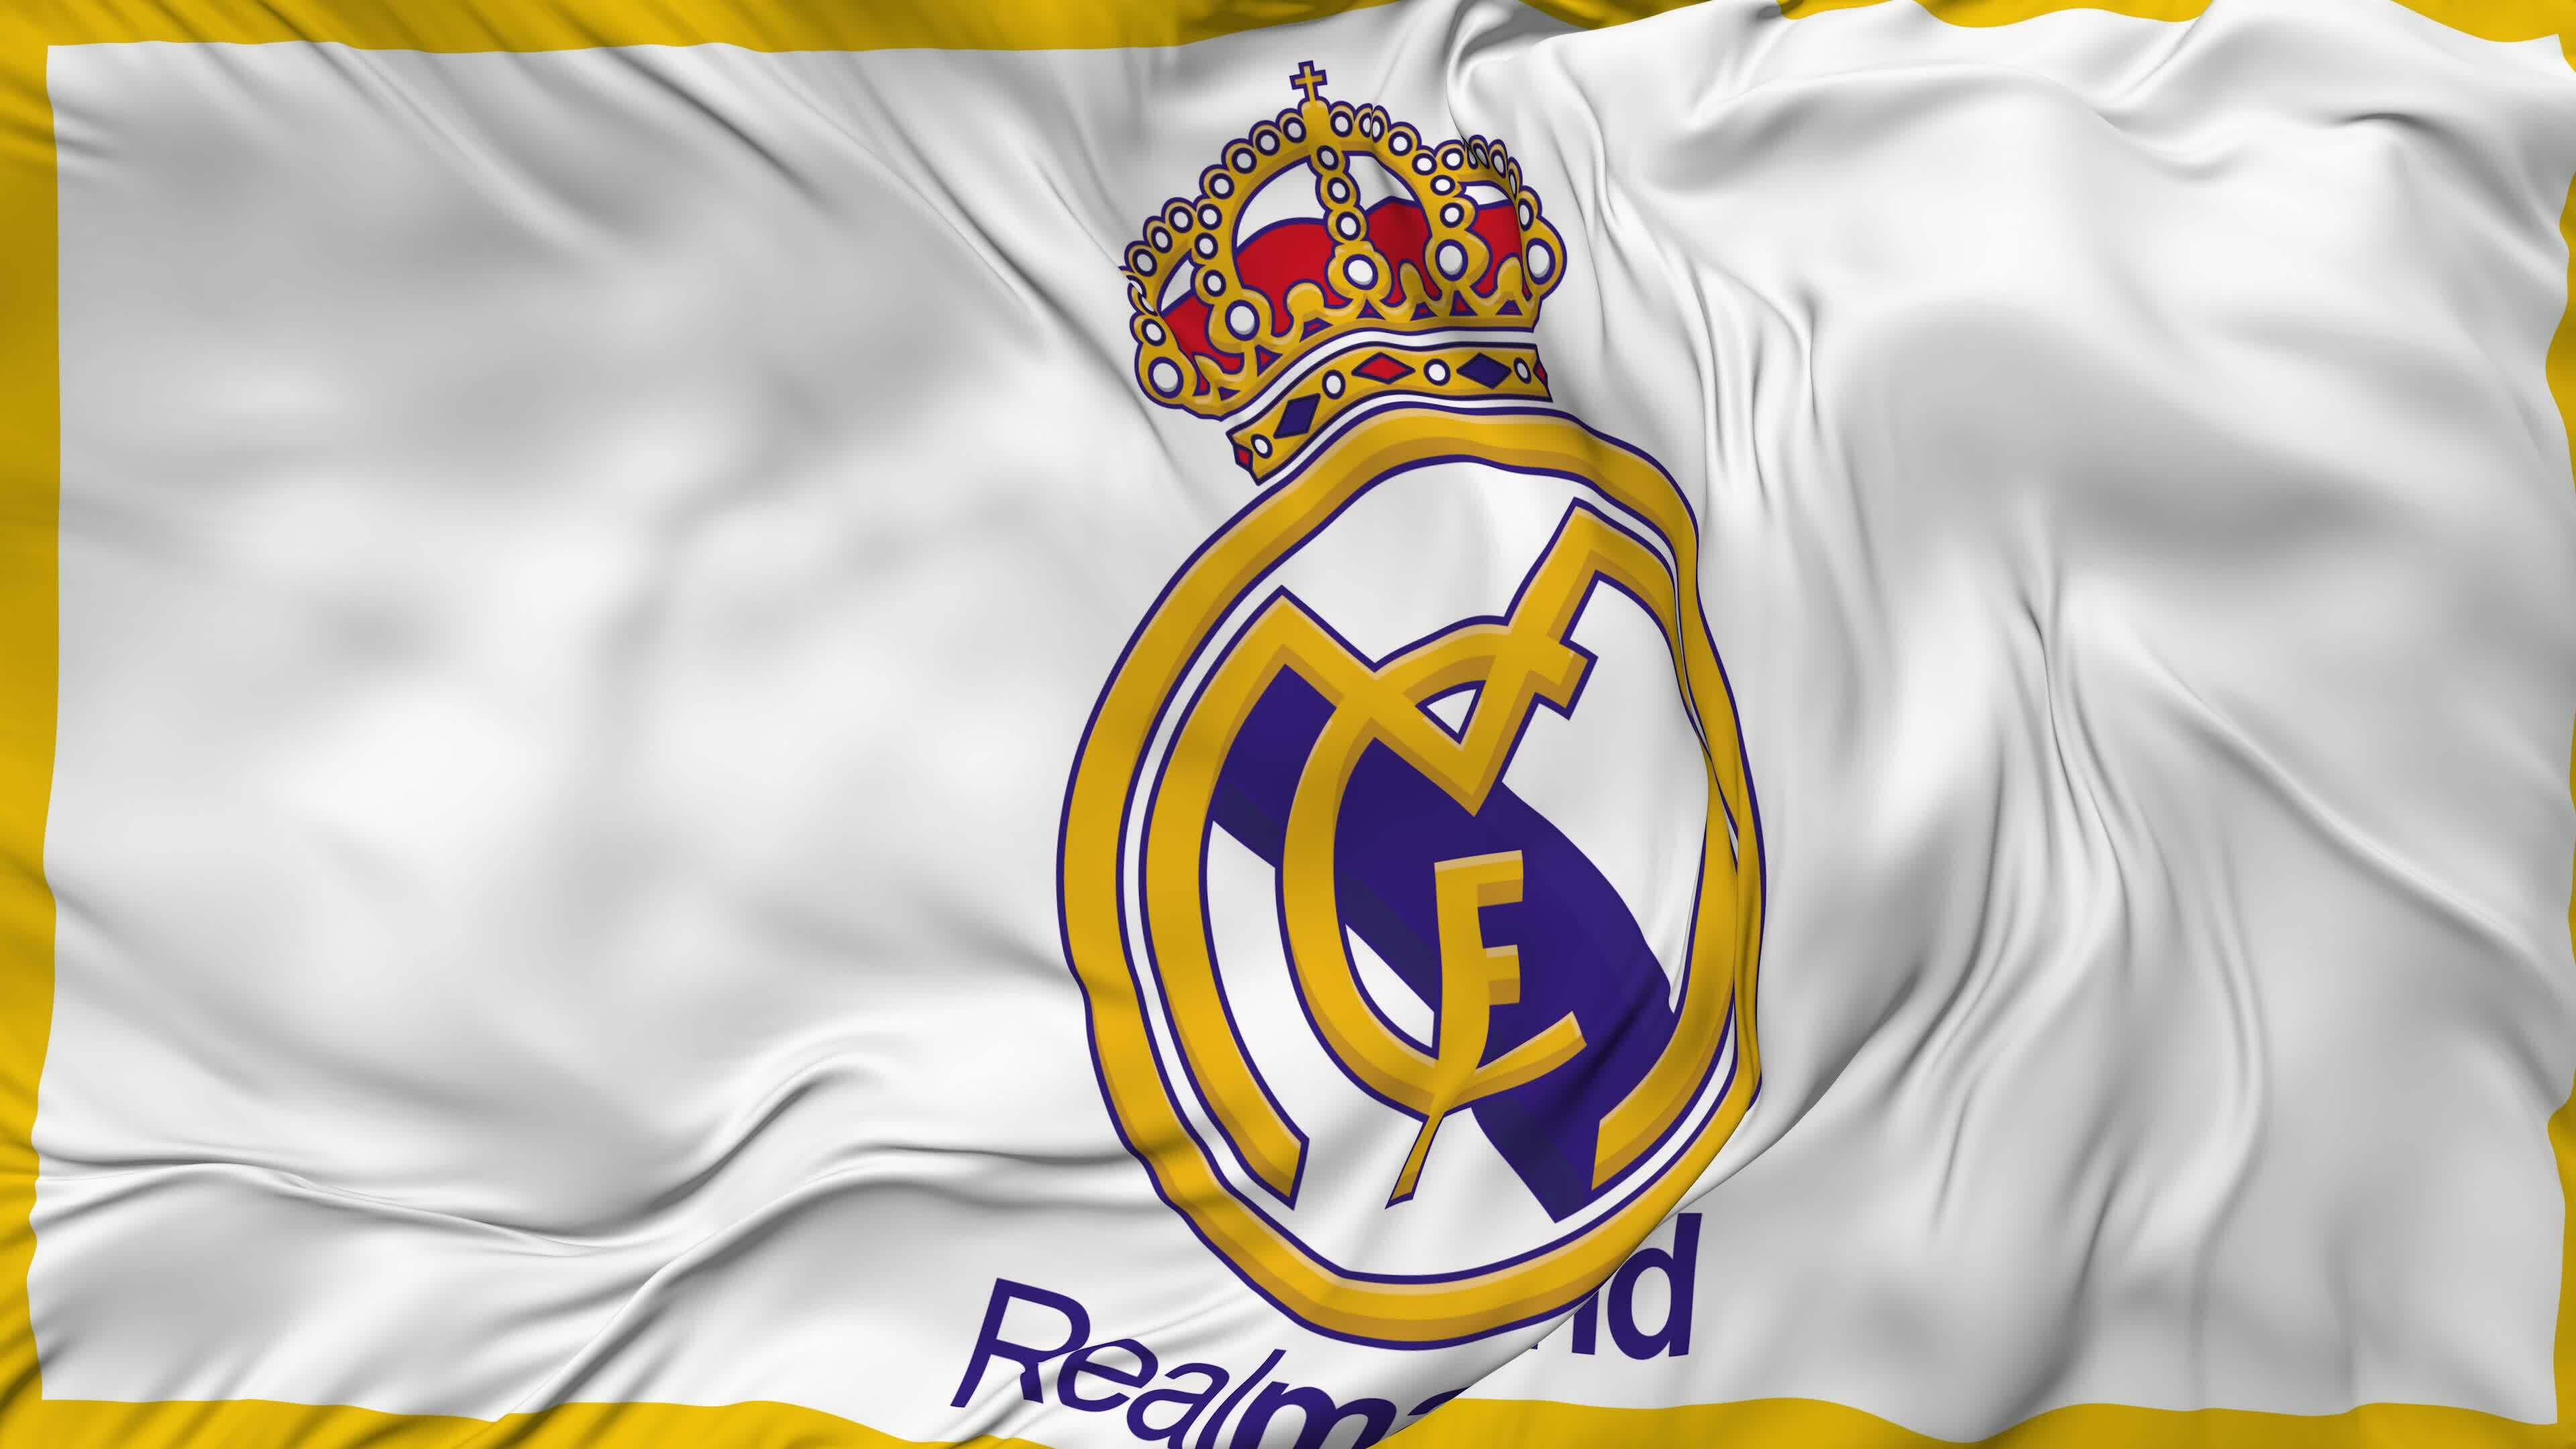 Real Madrid Club de Fútbol - AS.com